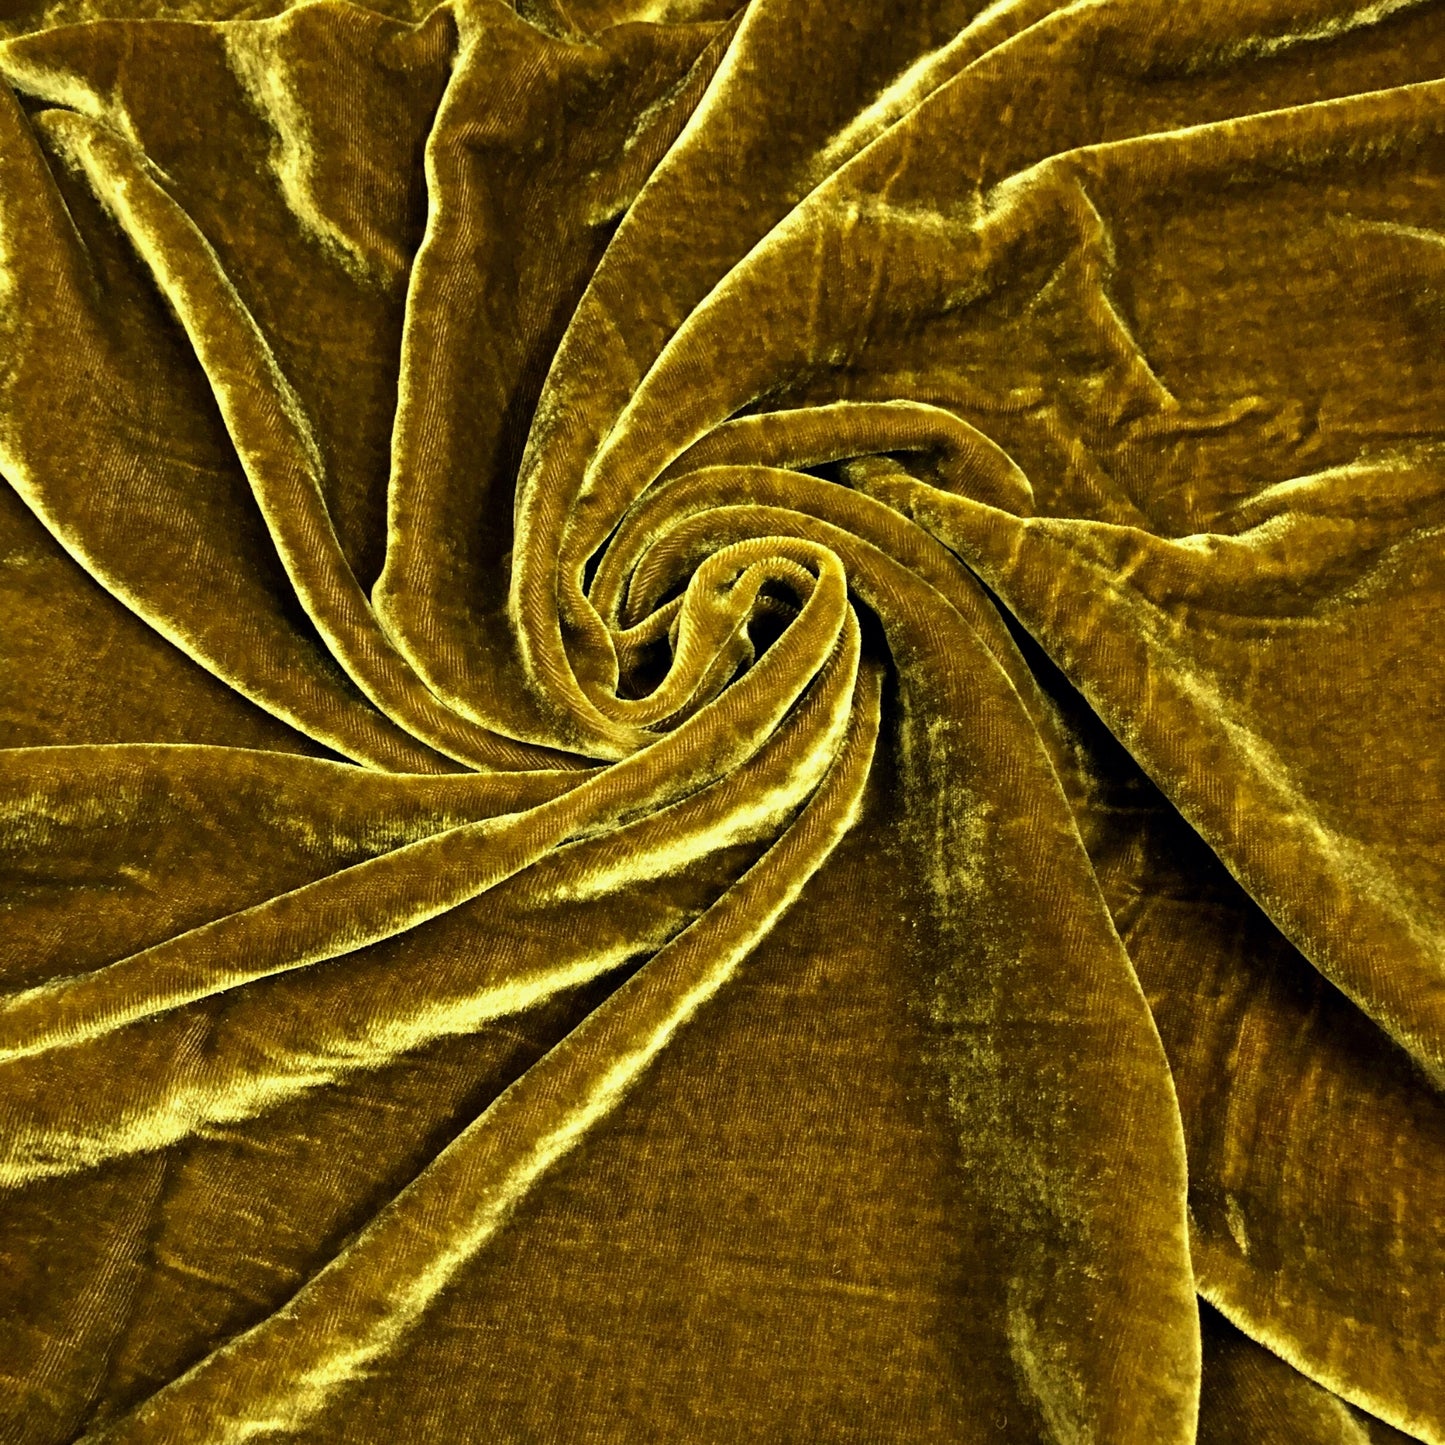 100% MULBERRY SILK VELVET fabric by the yard - Luxury Silk Velvet for Dress, Skirt, High End Garment - Silk apparel fabric - Velvet fabric